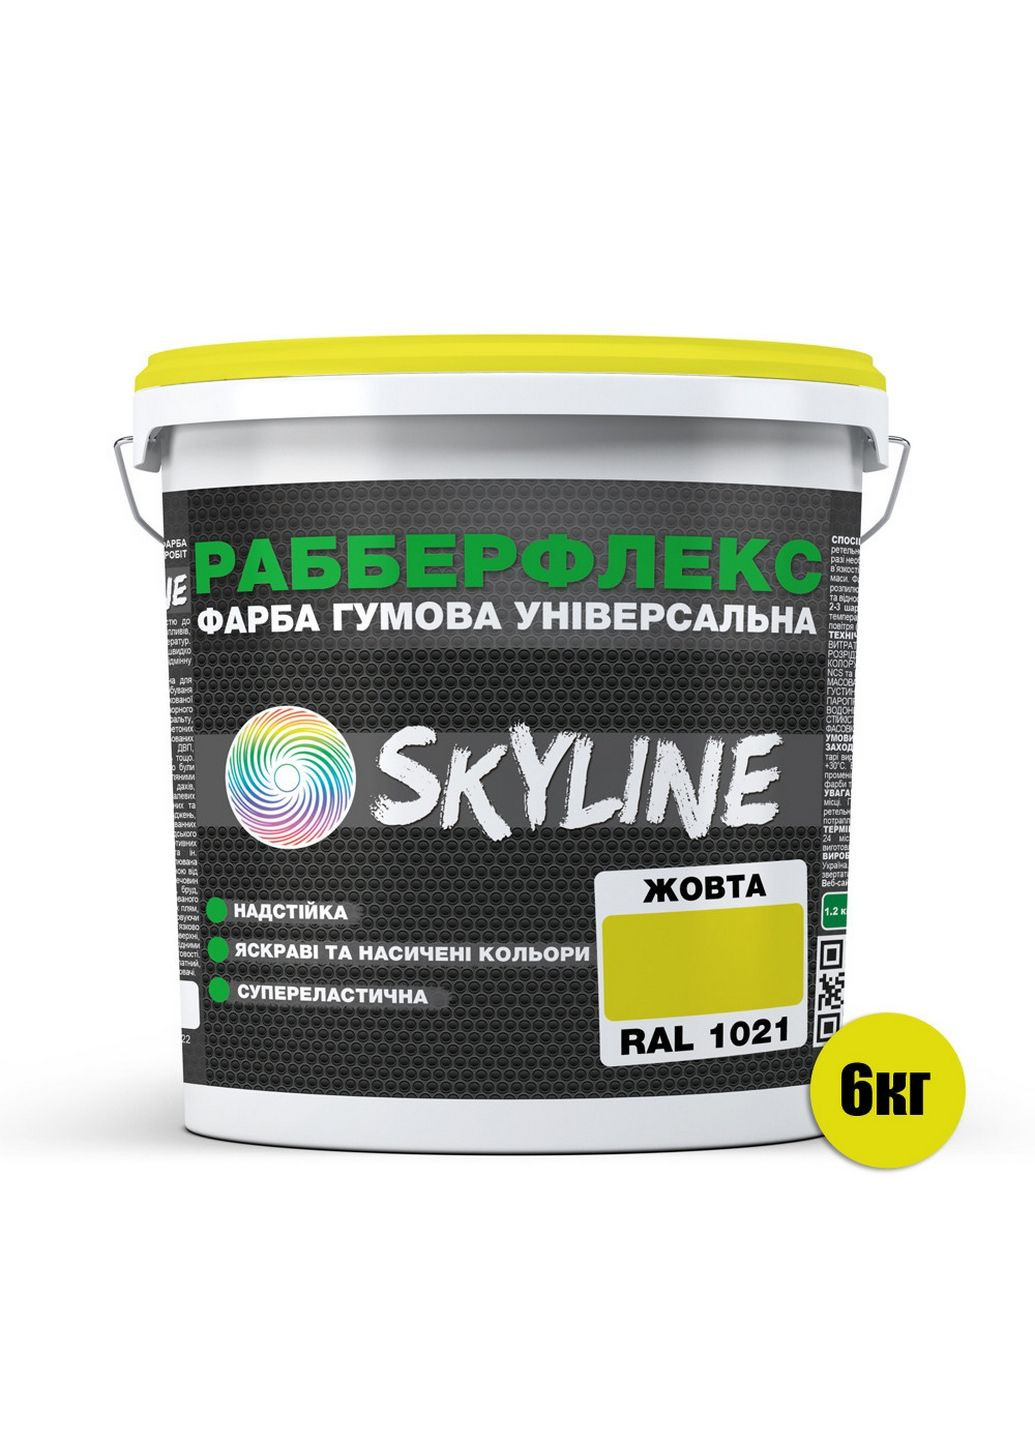 Надстійка фарба гумова супереластична «РабберФлекс» 6 кг SkyLine (283326479)